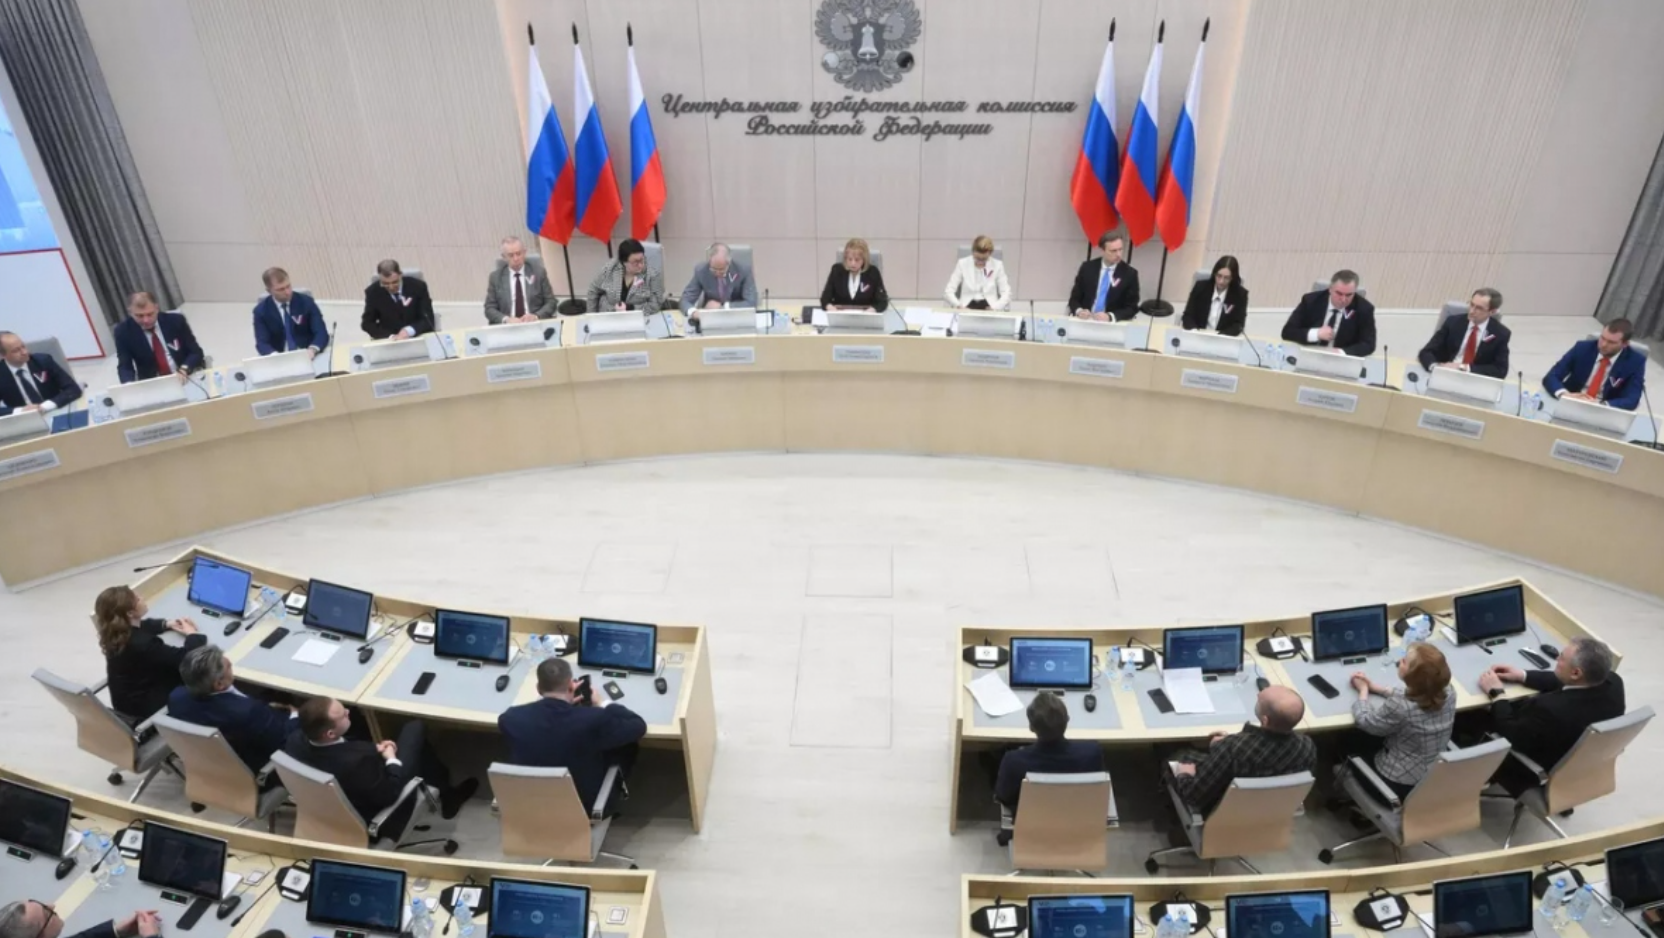 Cuộc họp của Ủy ban bầu cử trung ương về kết quả bỏ phiếu trong cuộc bầu cử Tổng thống Nga. (Ảnh: RIA Novosti)